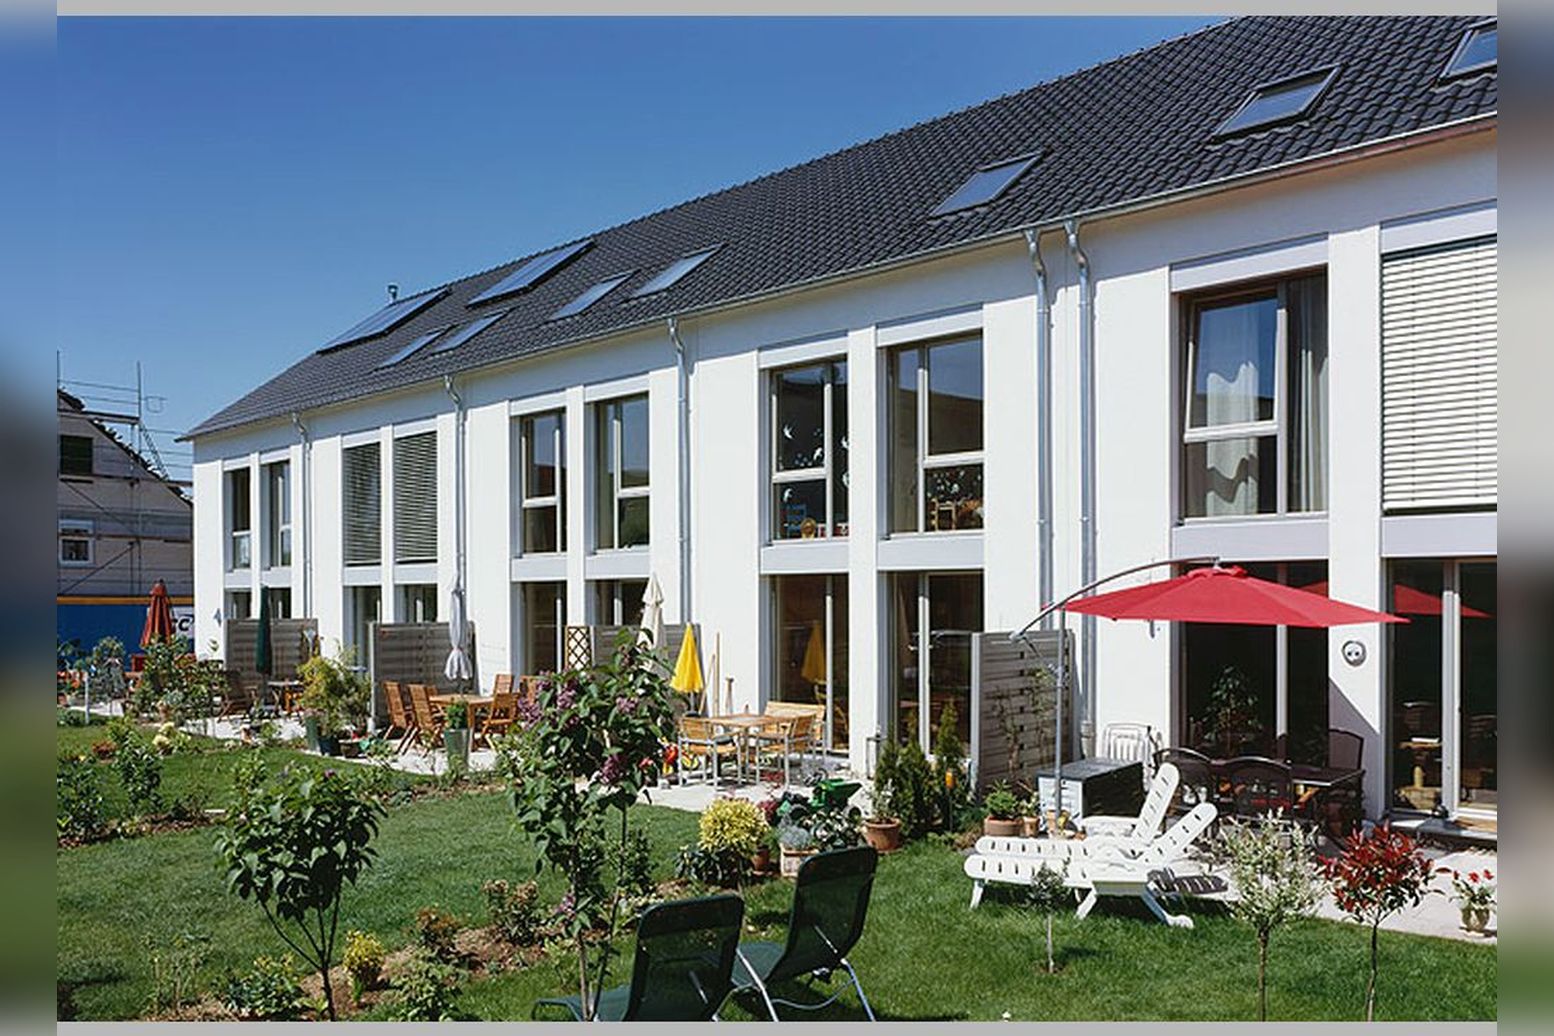 Immobilie Nr.D.dorf-Itter 100 - Reihenhäuser, Doppelhaushälften, Eigentumswohnungen auf Erbpacht - Bild 3.jpg